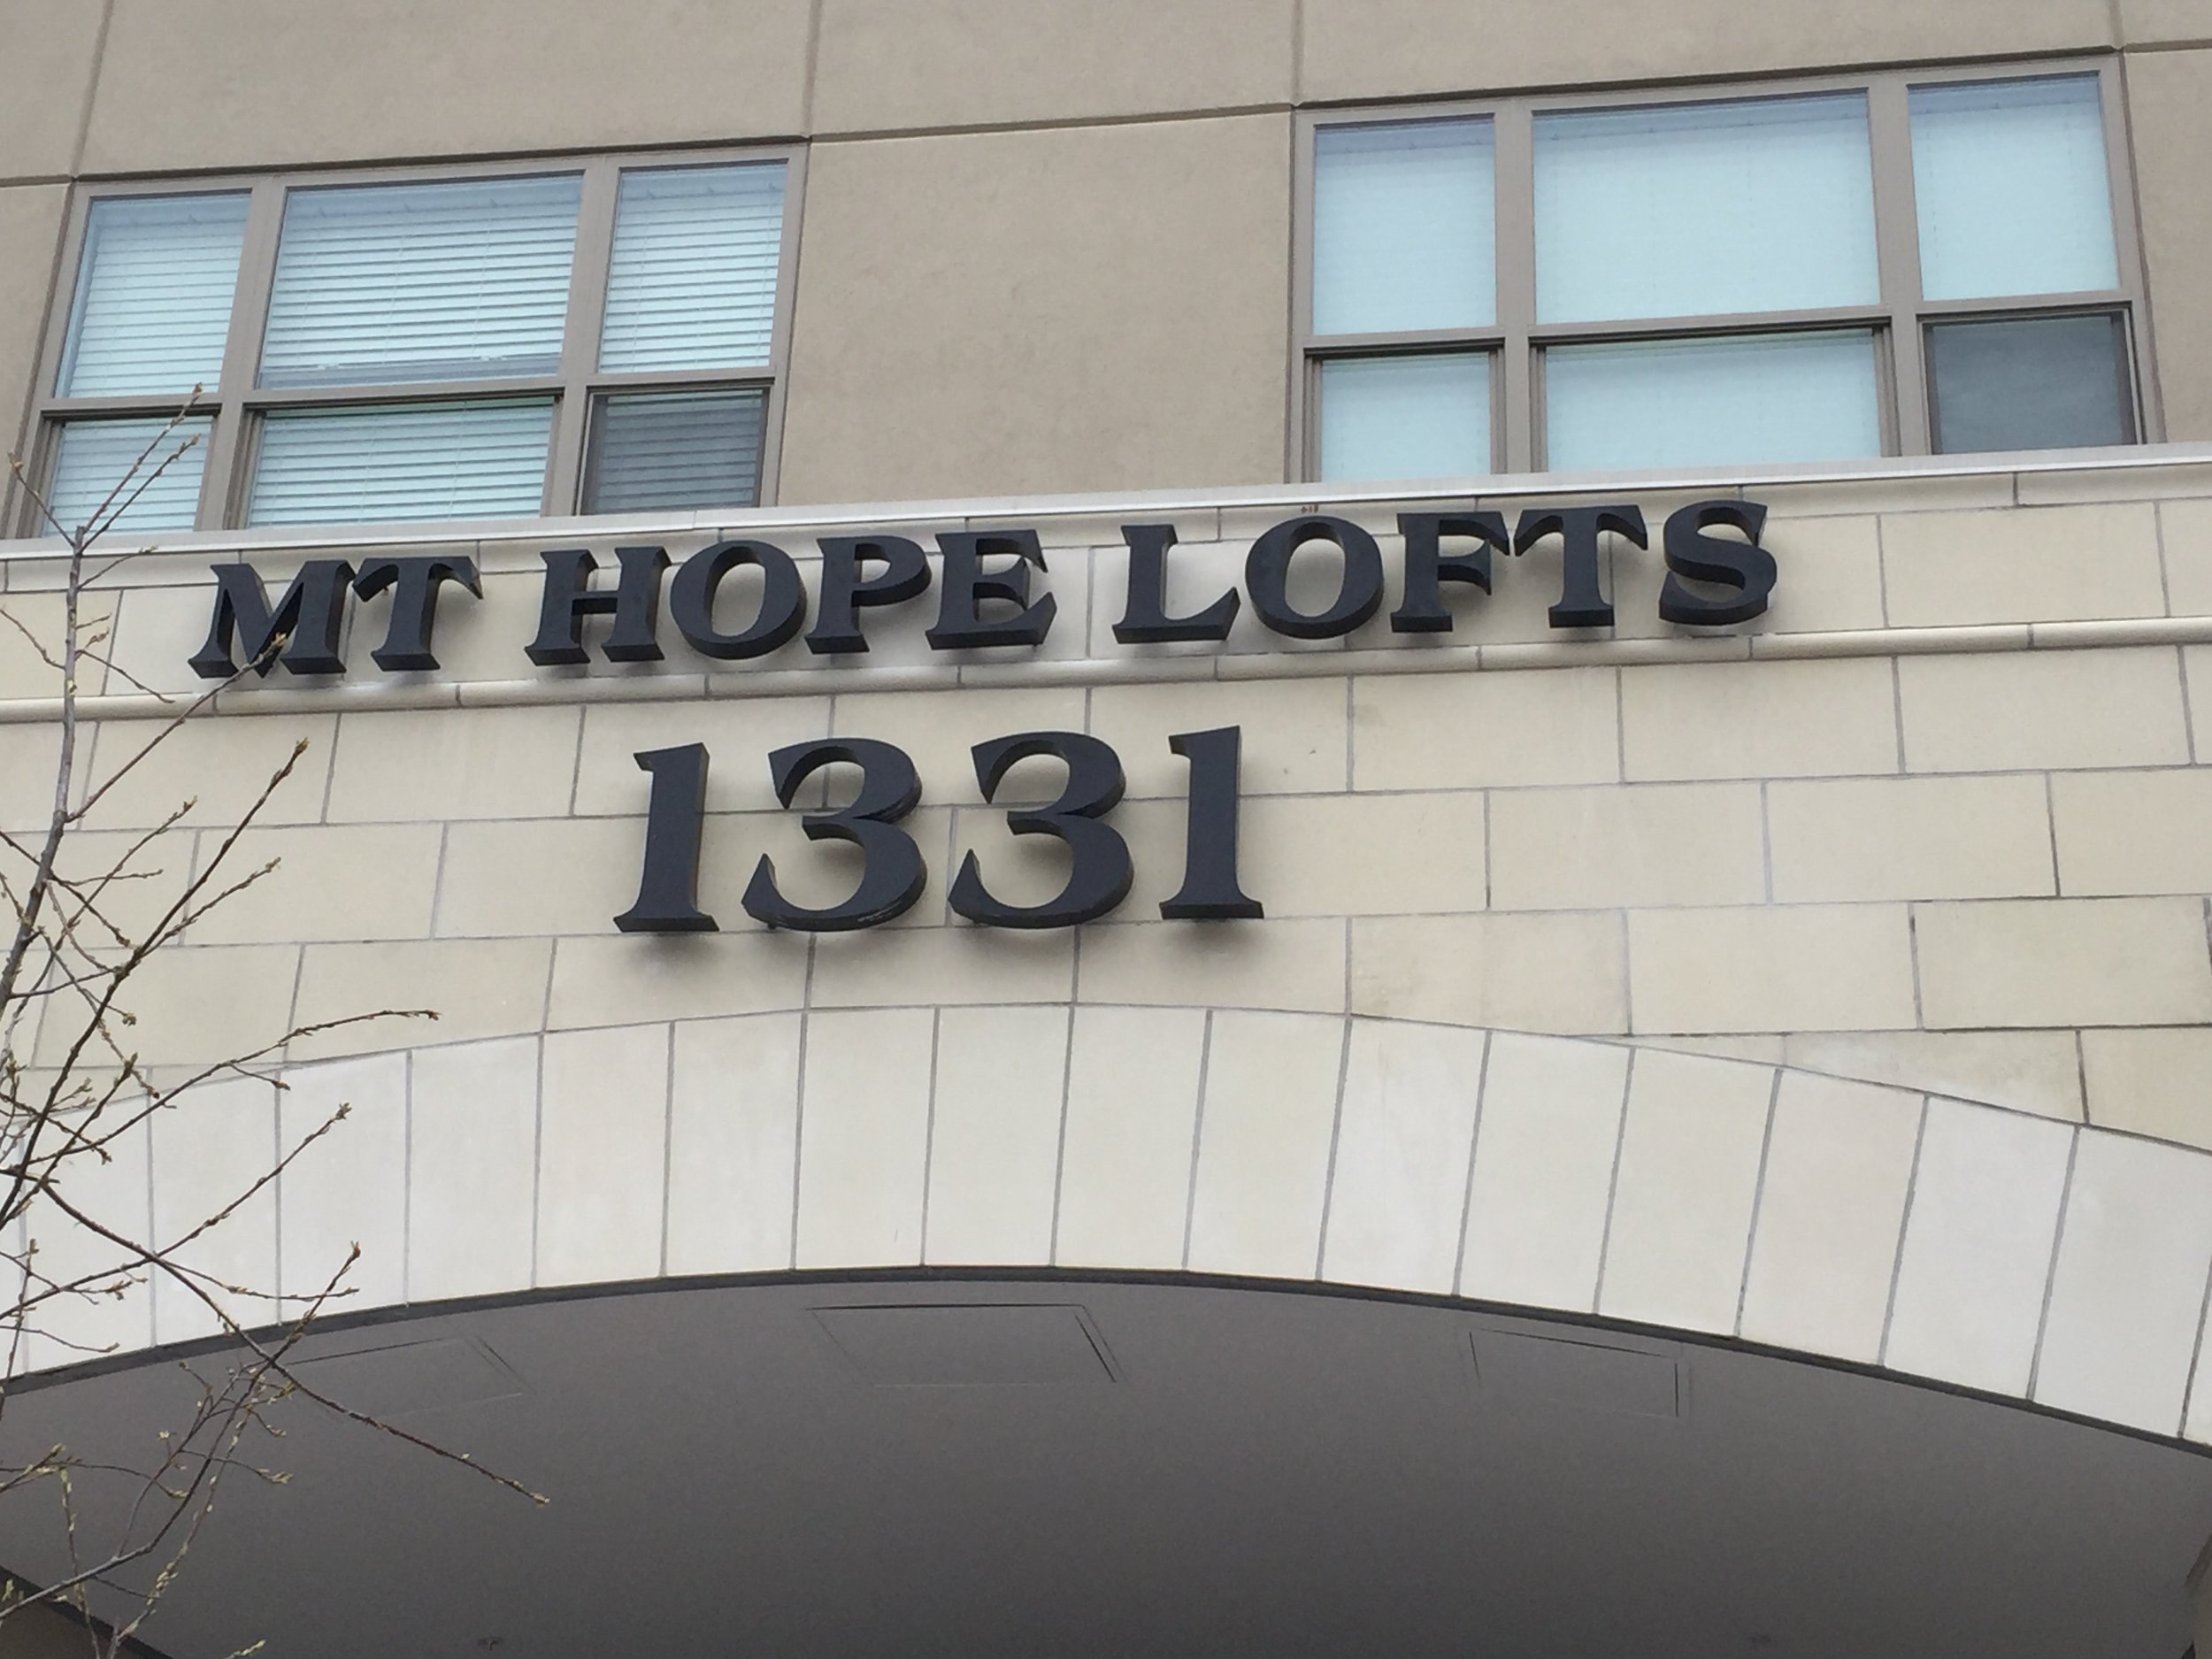 Mt Hope Lofts